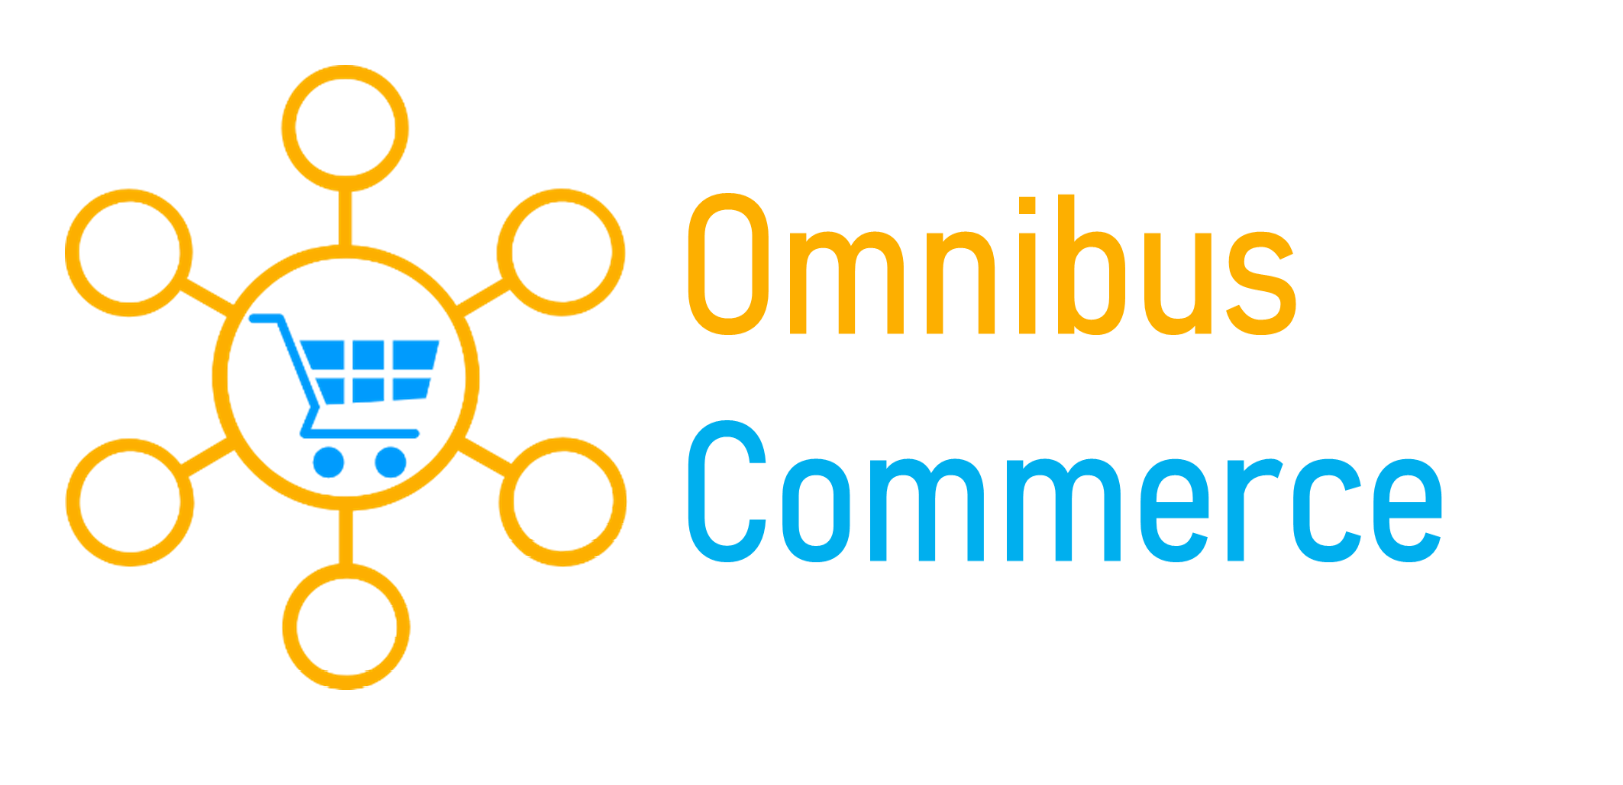 OmnibusCommerce